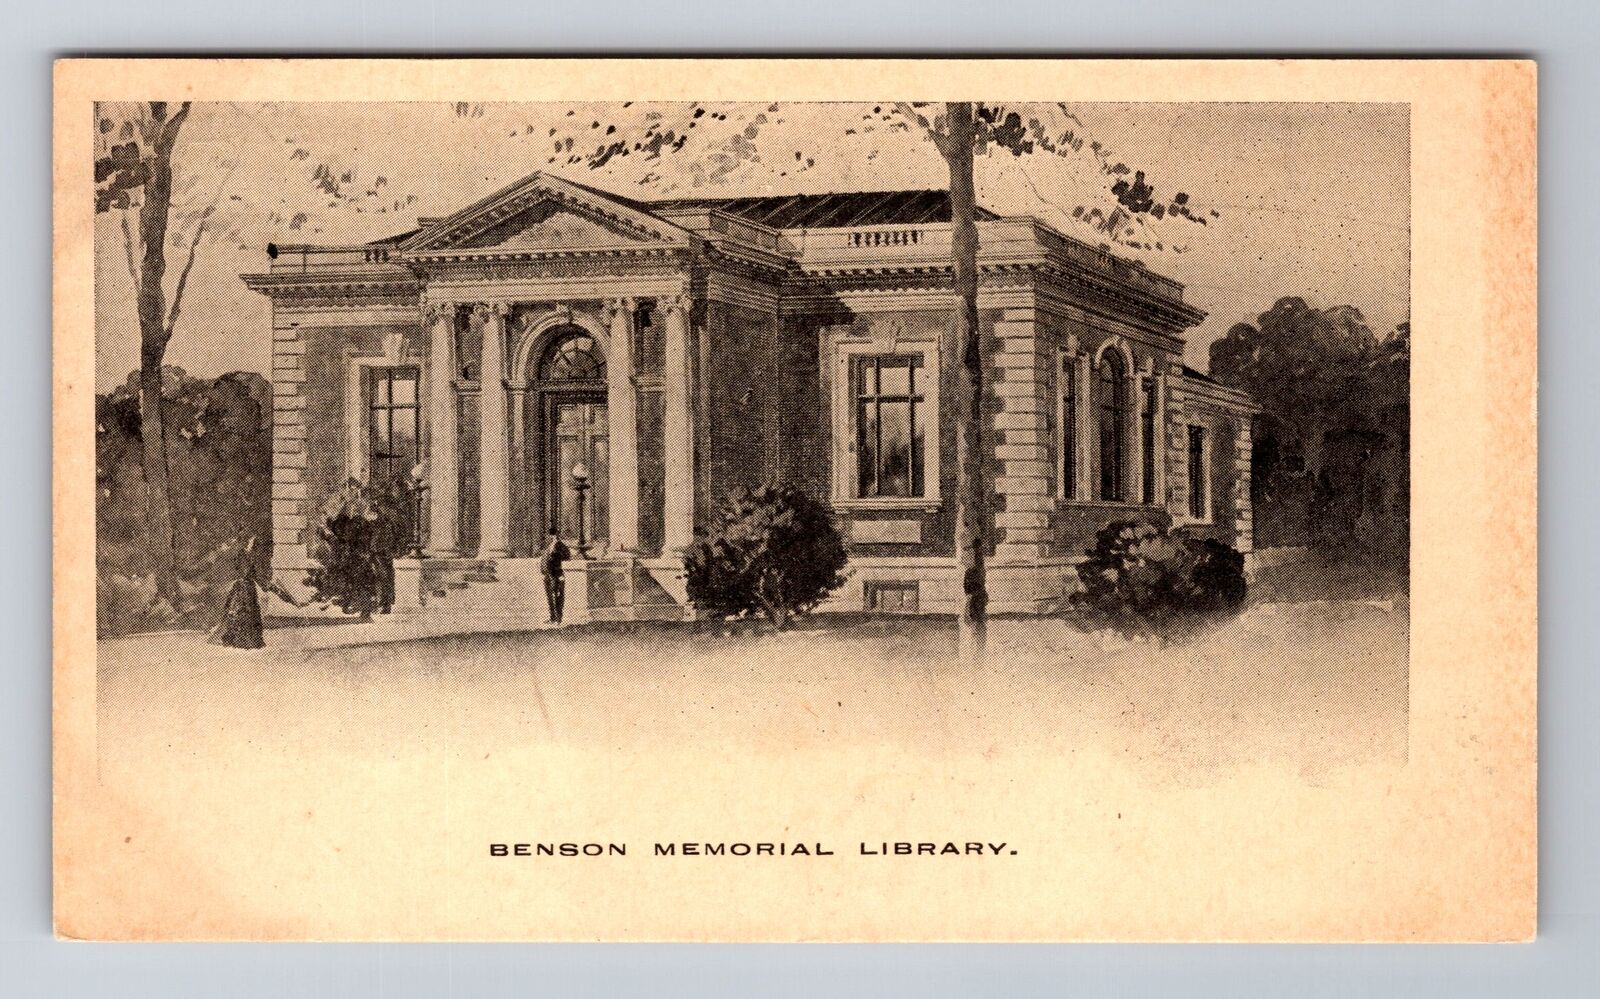 Titusville PA-Pennsylvania, Benson Memorial Library, Antique Vintage Postcard